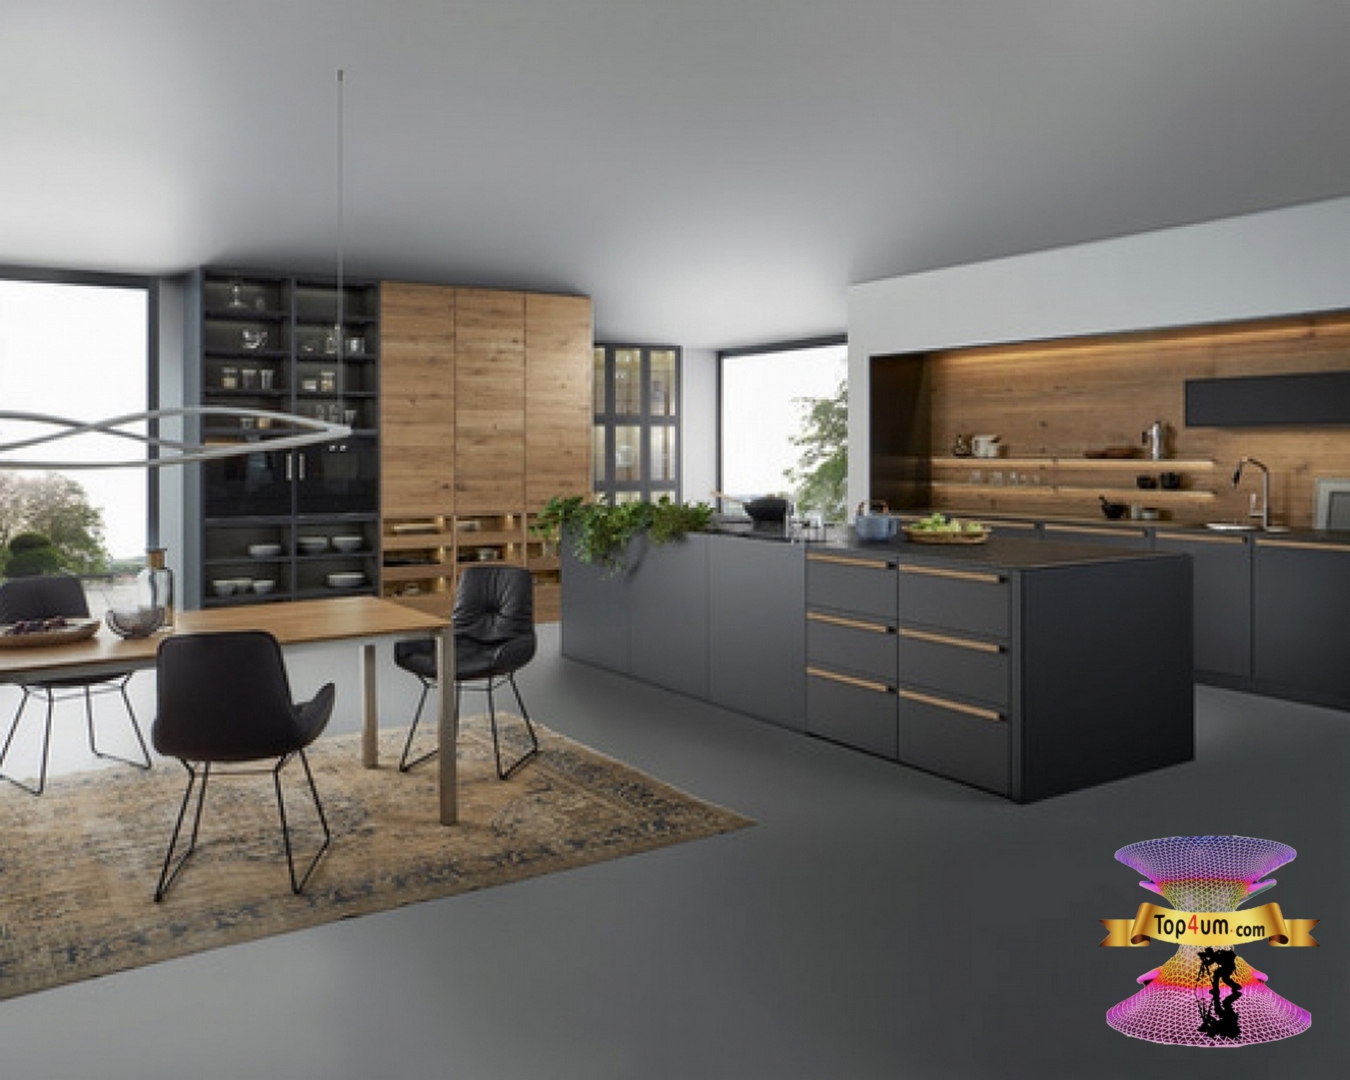 احدث موديلات و اشكال المطابخ صغيرة المساحة 2021 kitchen design ideas